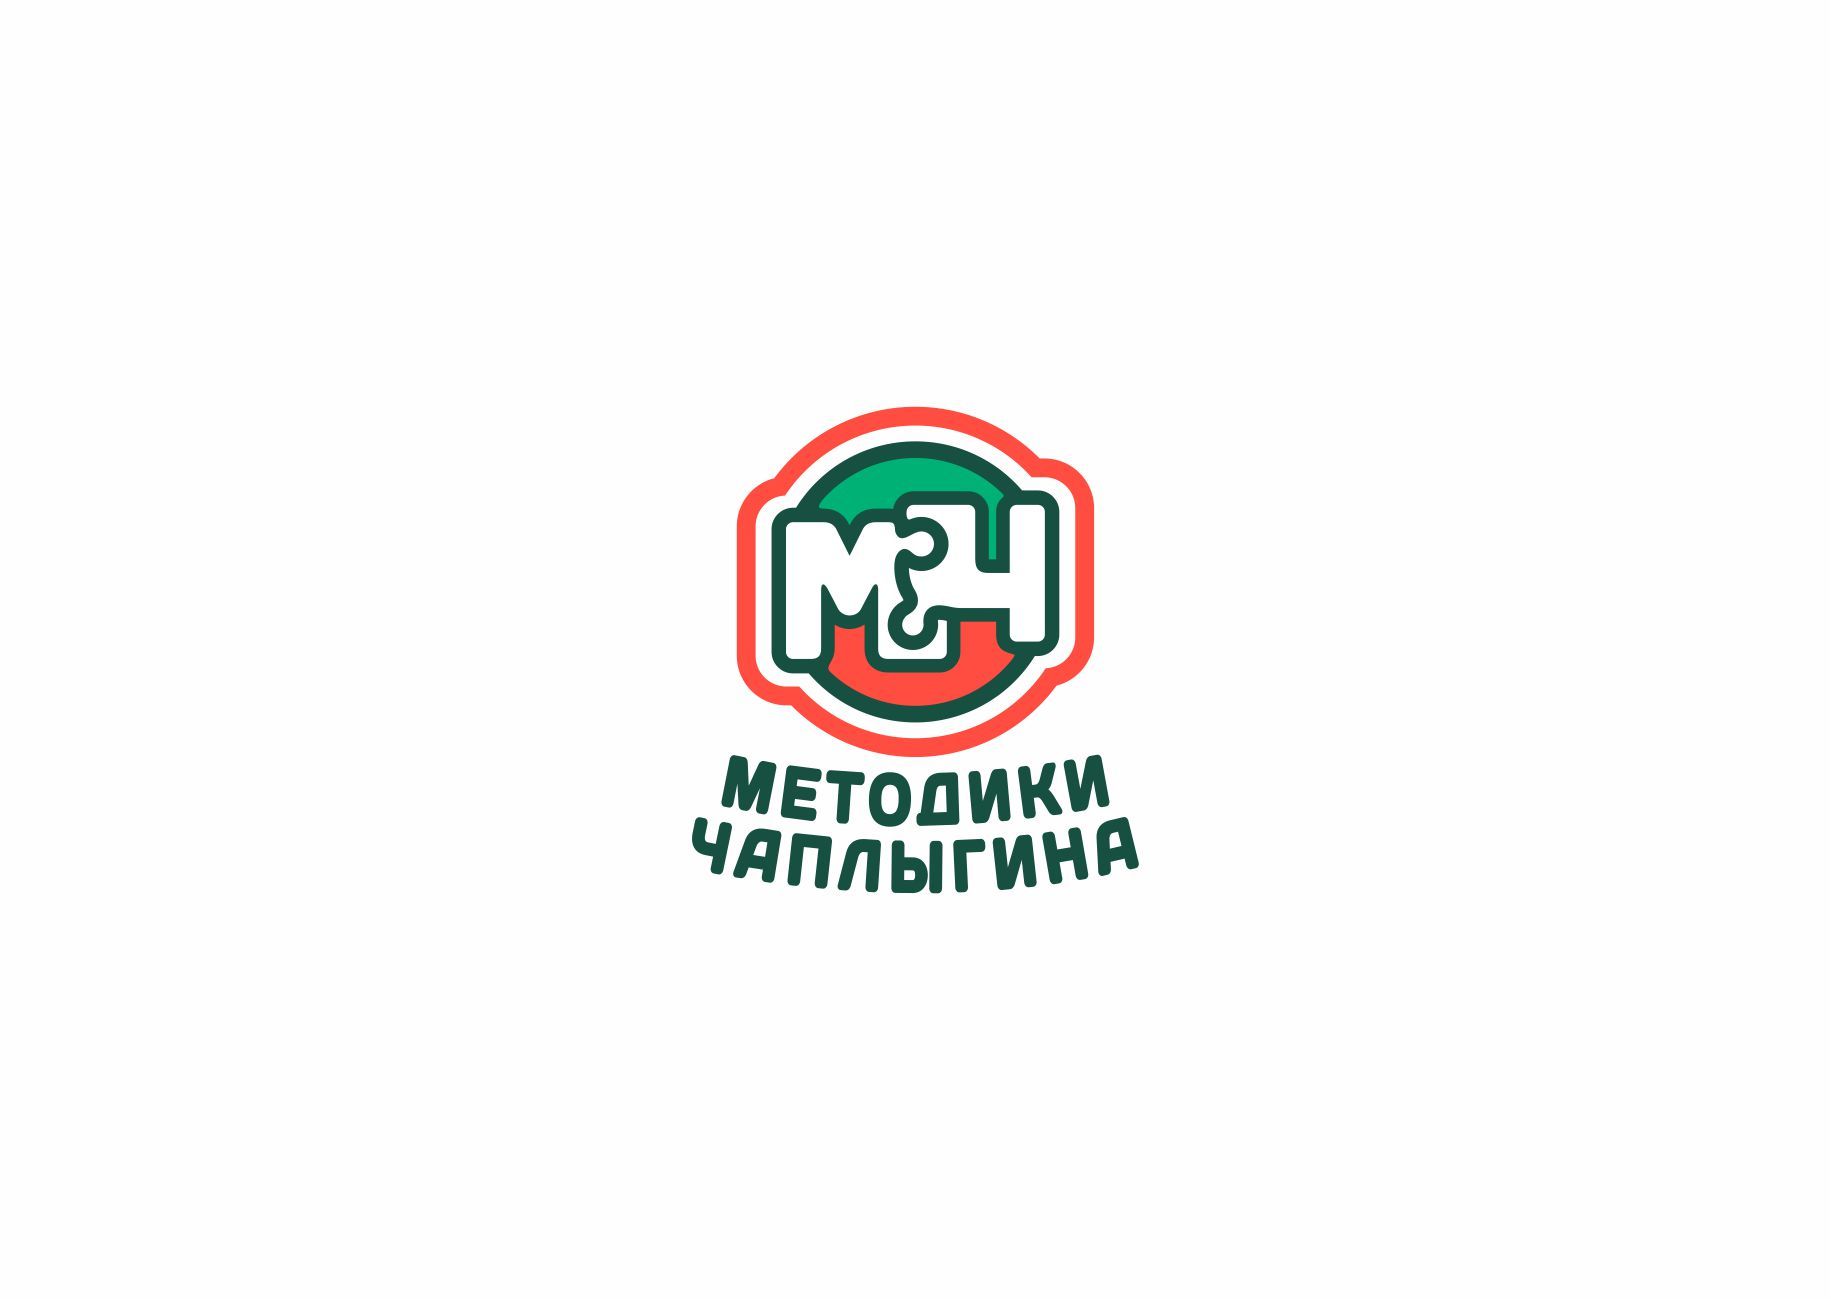 Лого и фирменный стиль для МЕТОДИКИ ЧАПЛЫГИНА - дизайнер graphin4ik